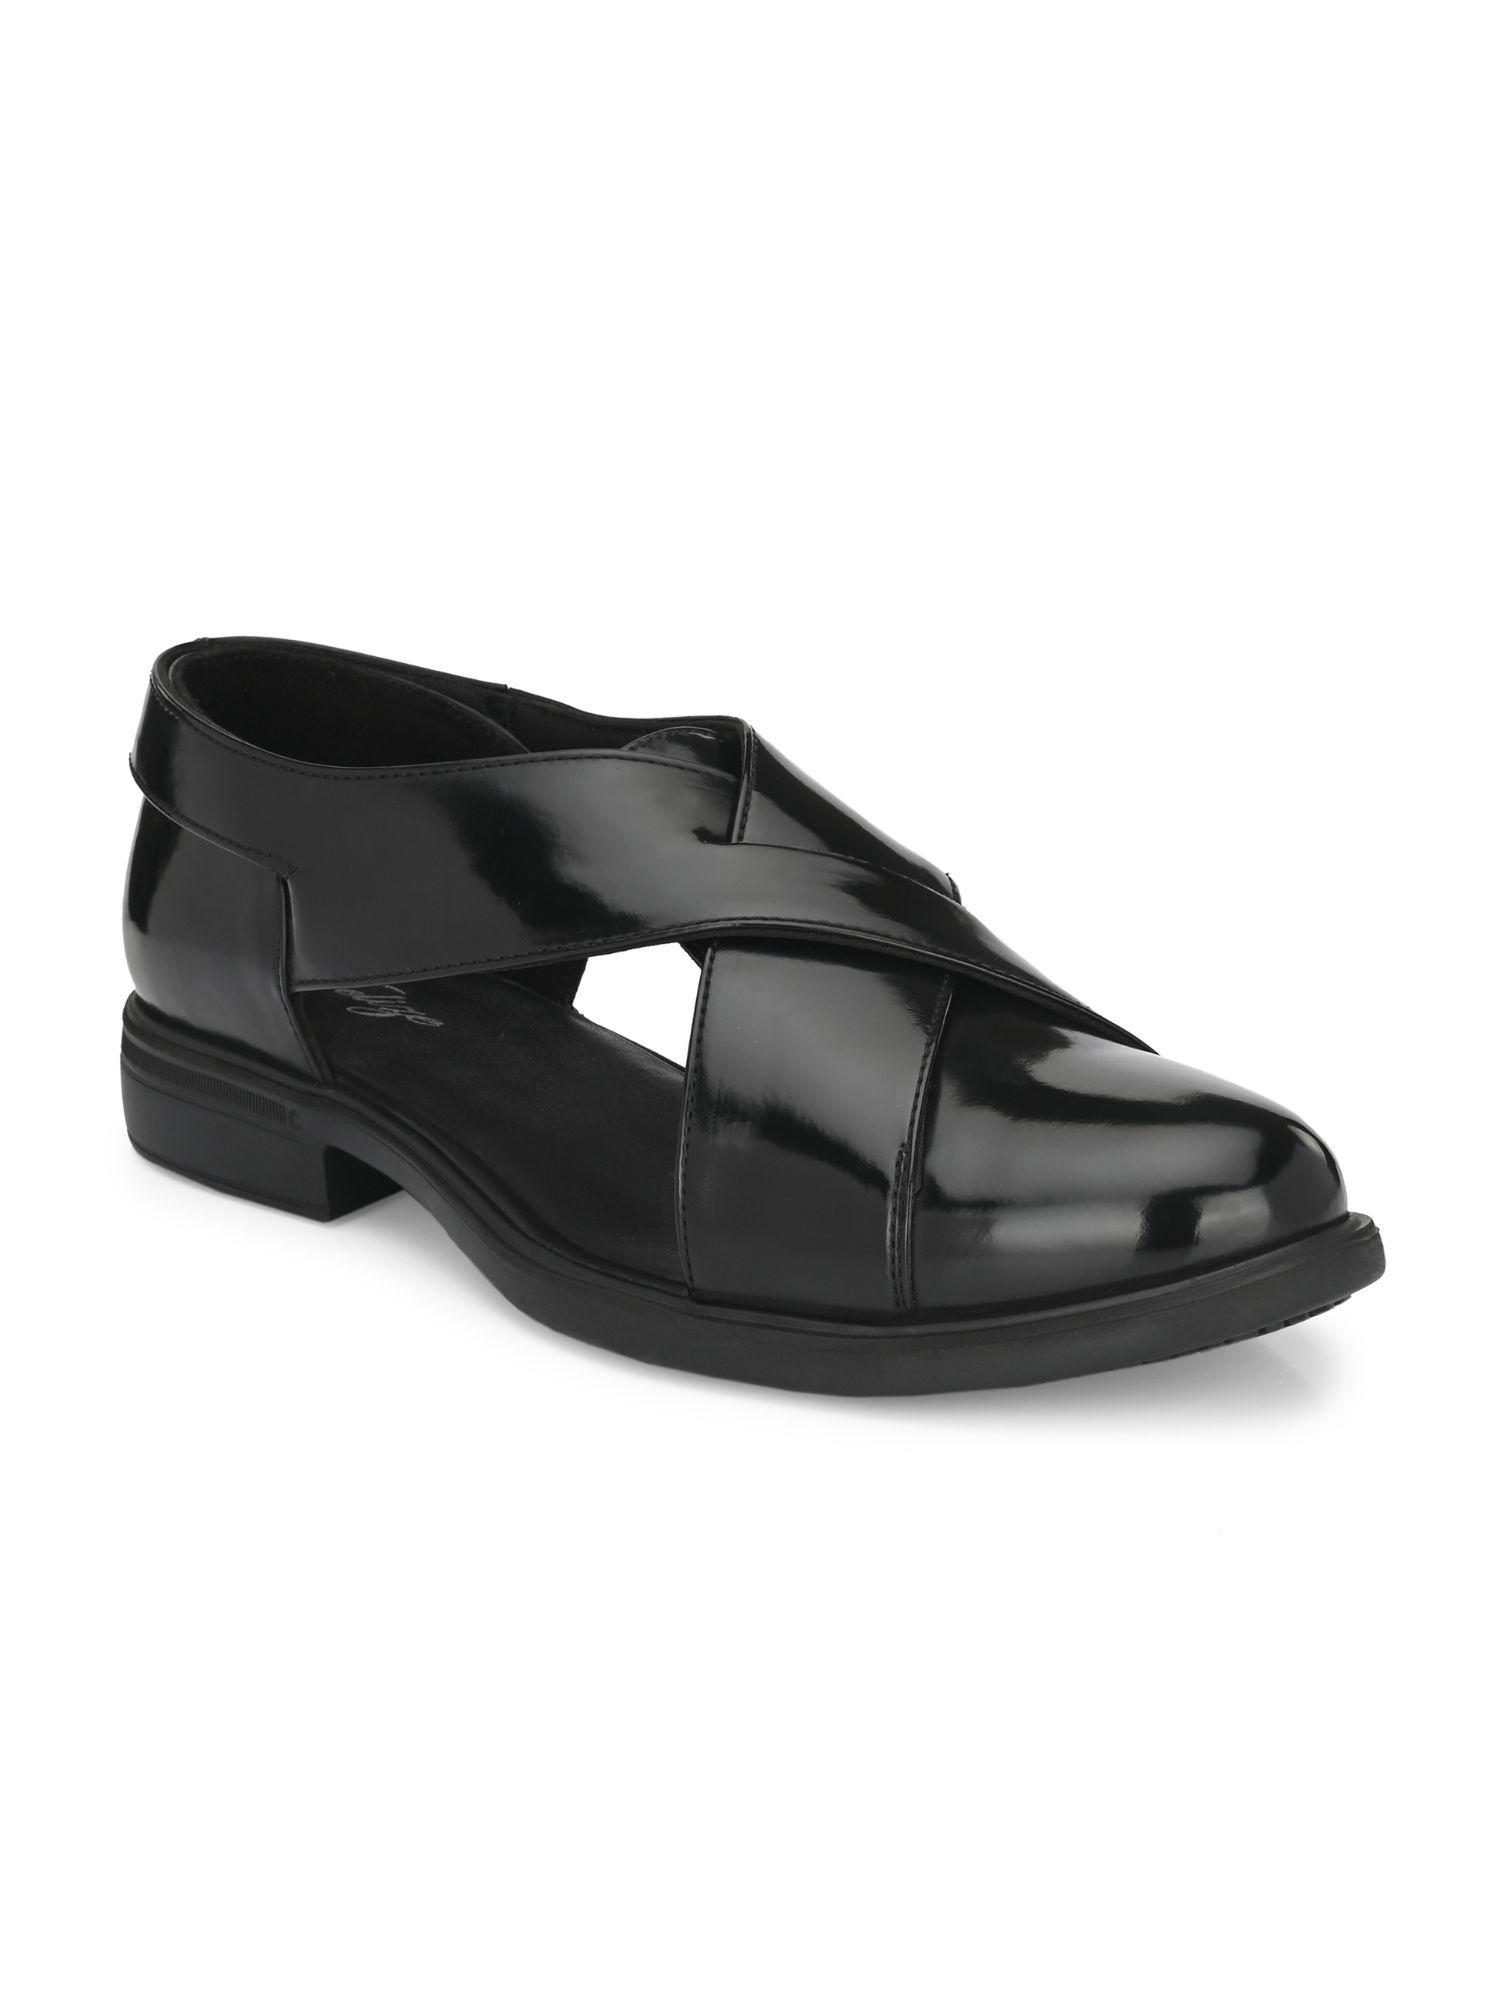 Mens Black Solid Roman Casual Sandals